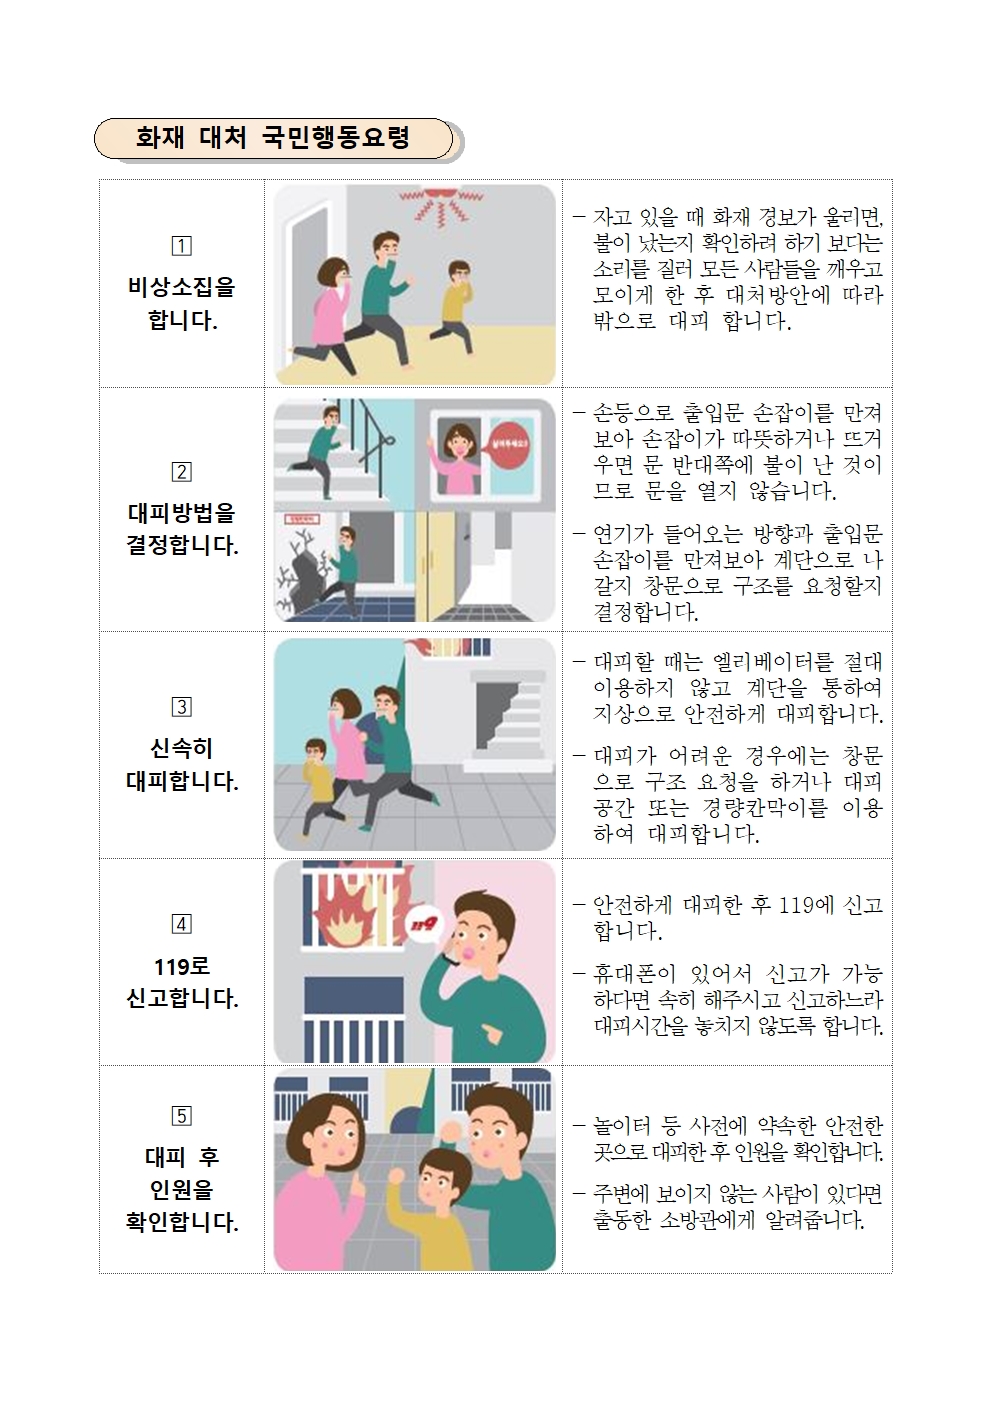 학생 안전의식 고취 가정통신문002